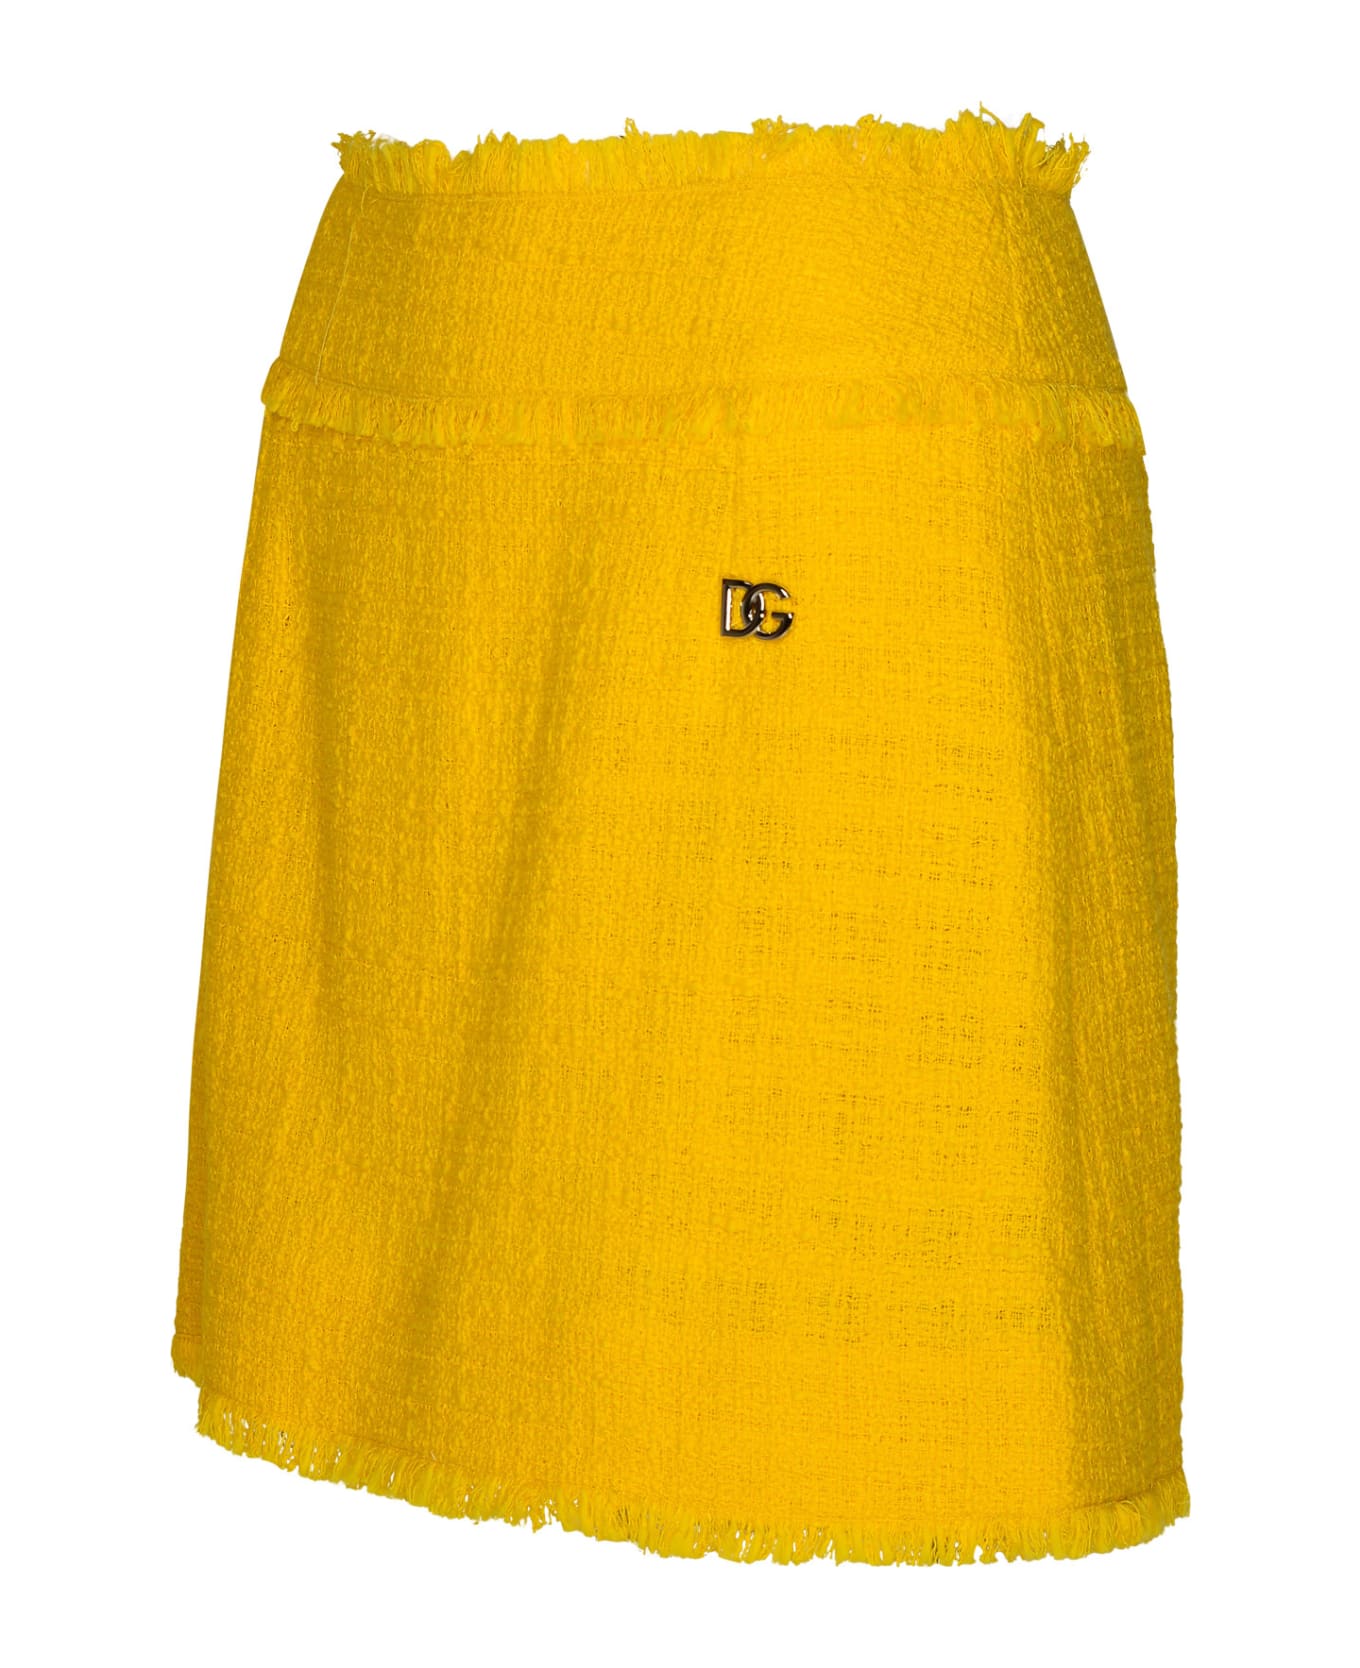 Dolce & Gabbana Yellow Cotton Blend Miniskirt - Yellow スカート